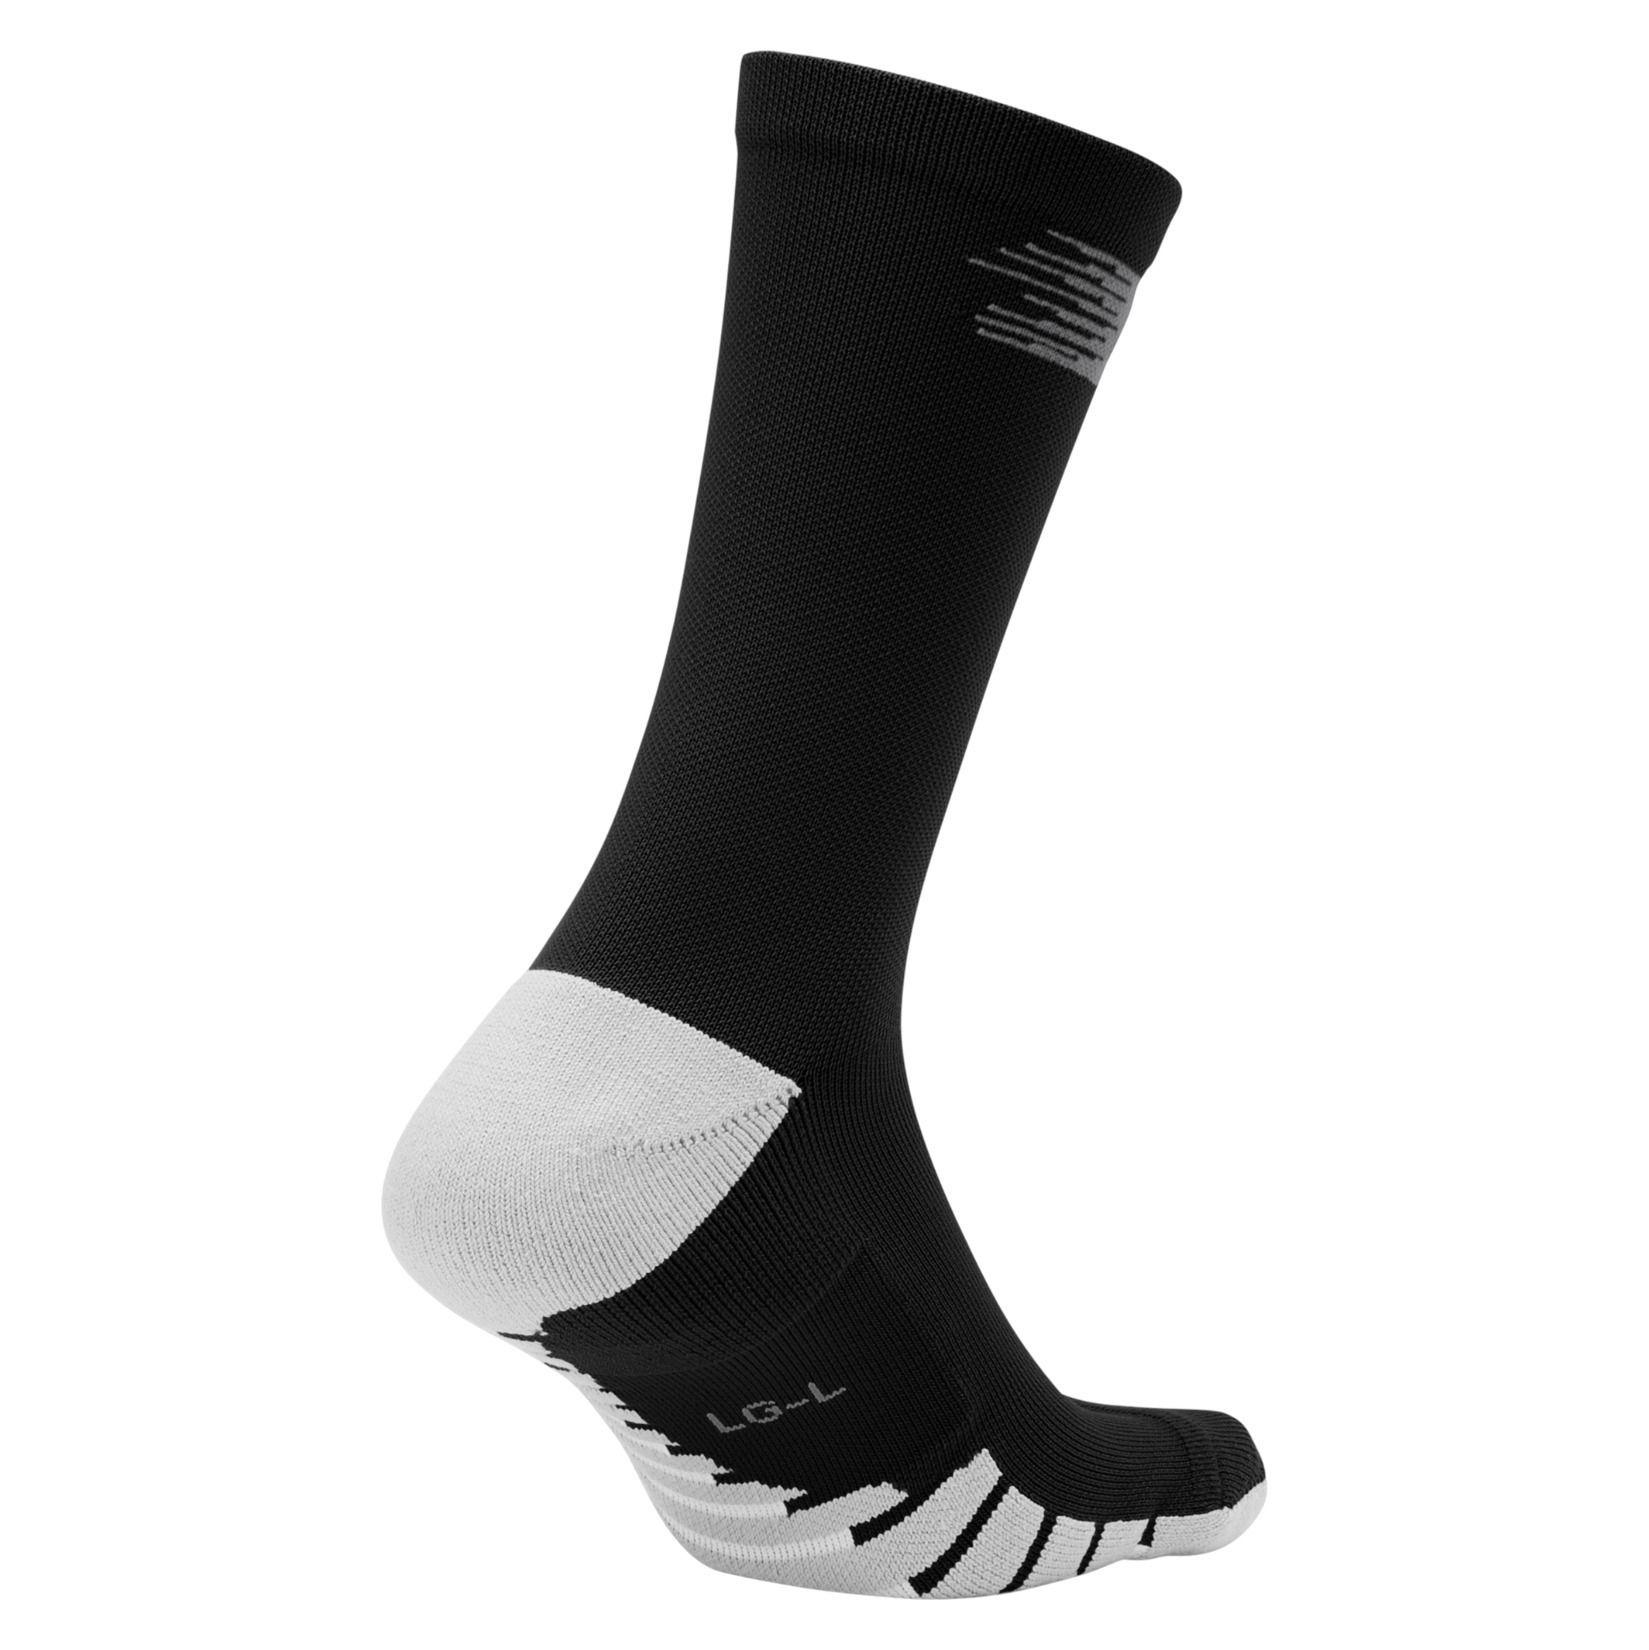 Nike Matchfit Crew Football Socks - Kitlocker.com